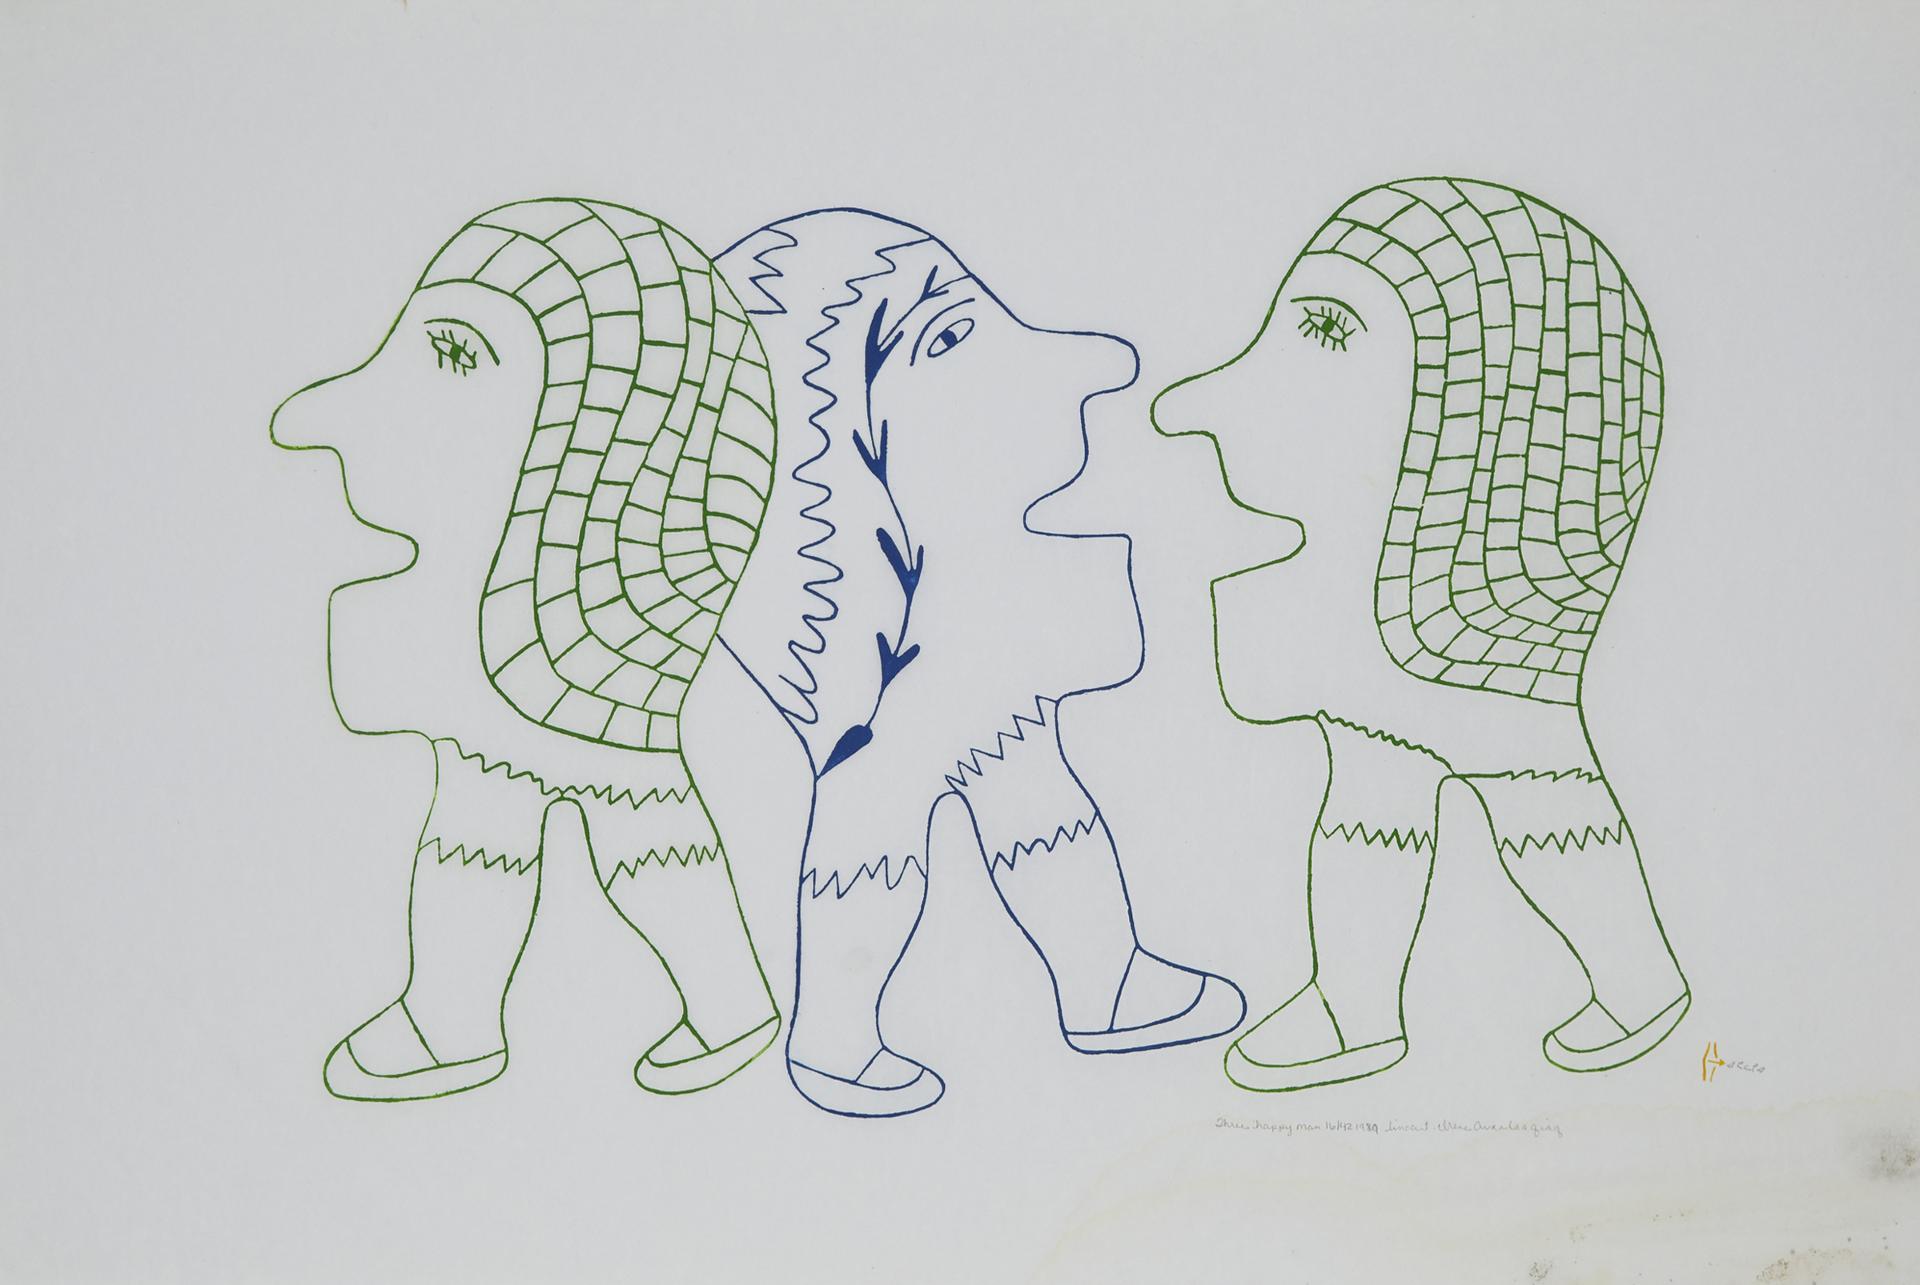 Irene Avaalaaquiaq Tiktaalaaq (1941) - Three Happy Men